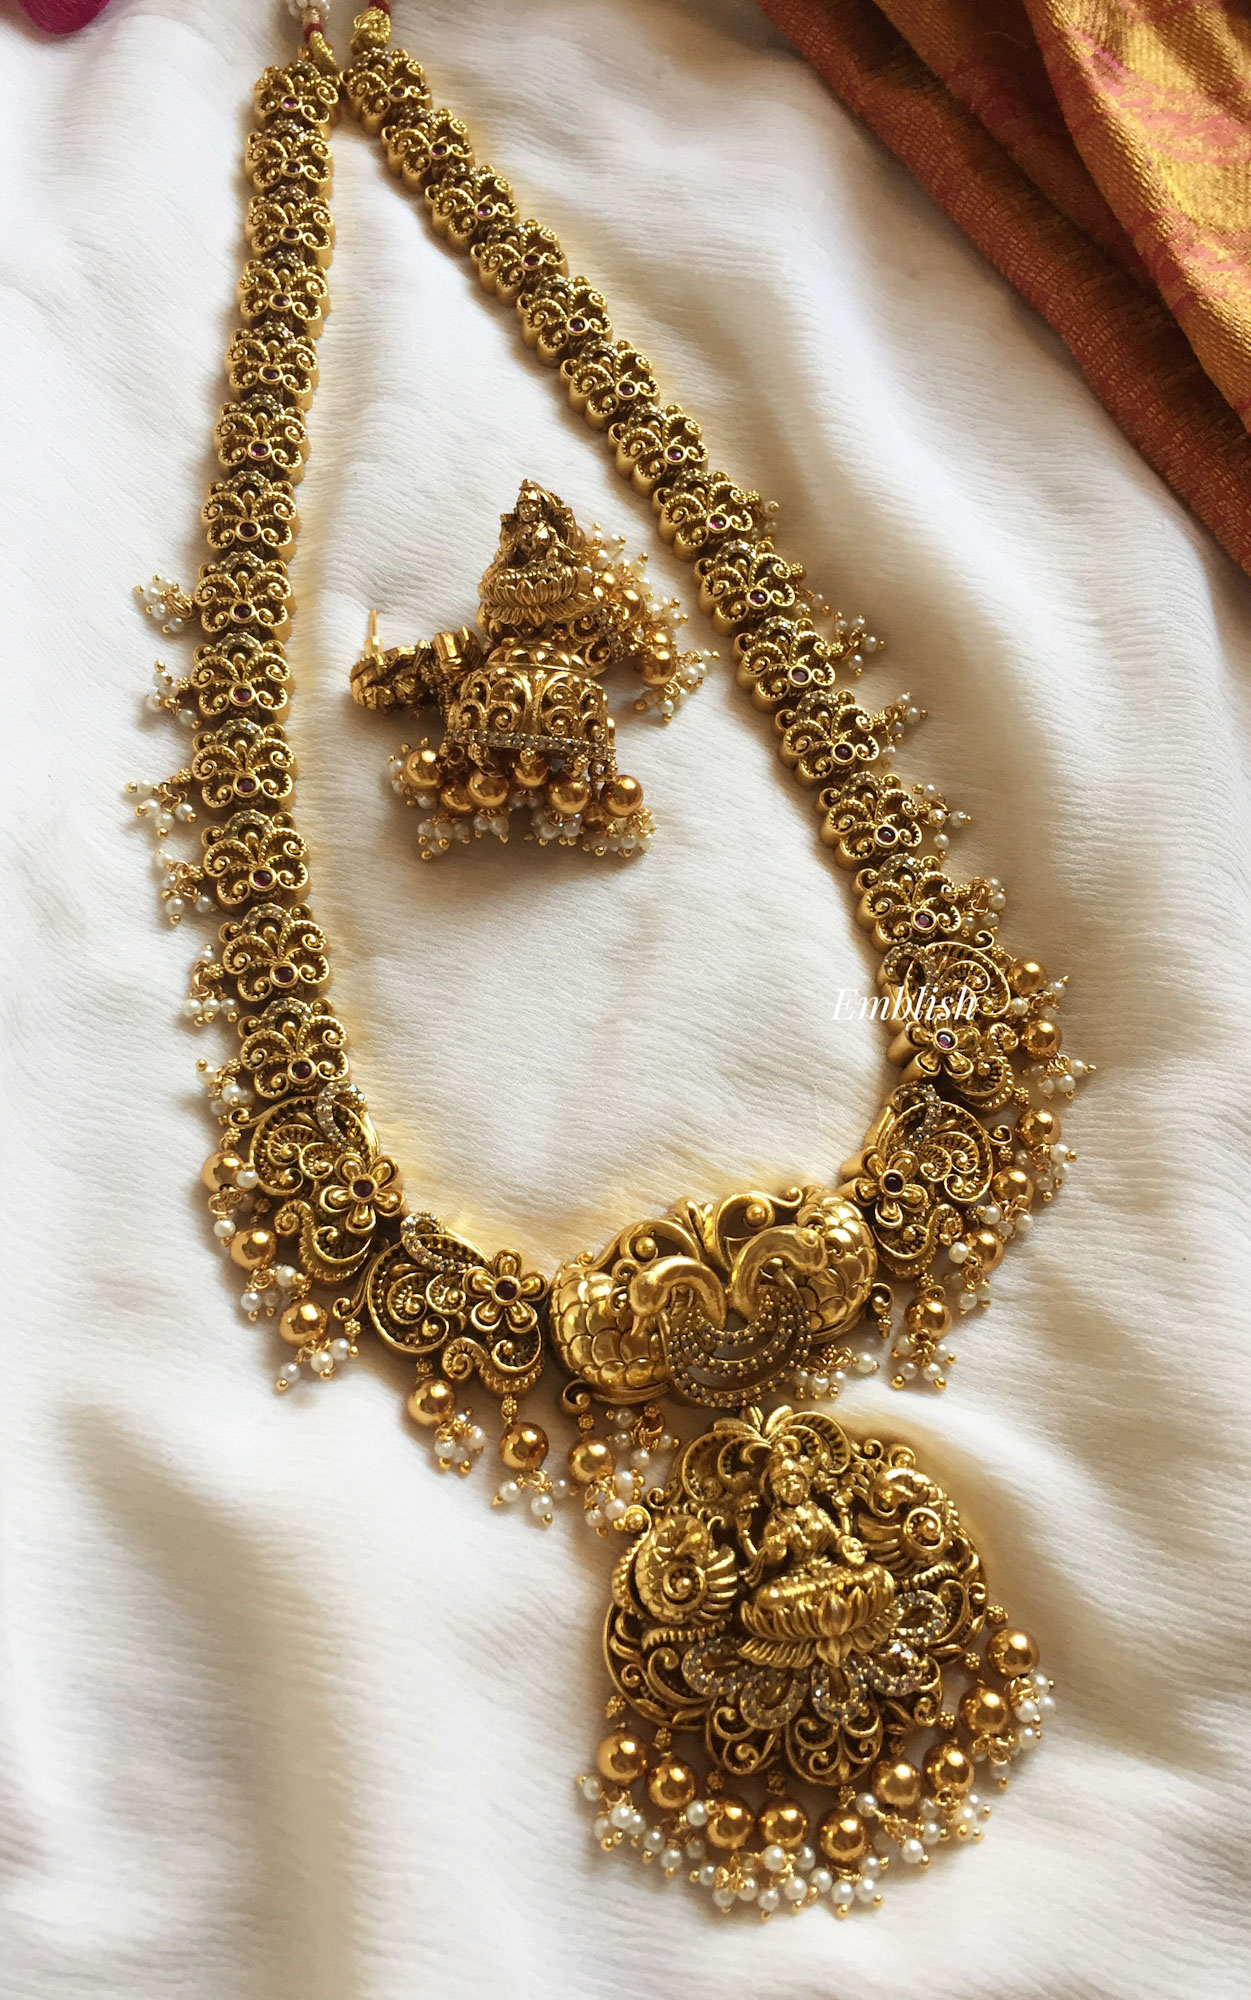 Antique 3D Lakshmi with Double Peacock Long Neckpiece - Gold Beads